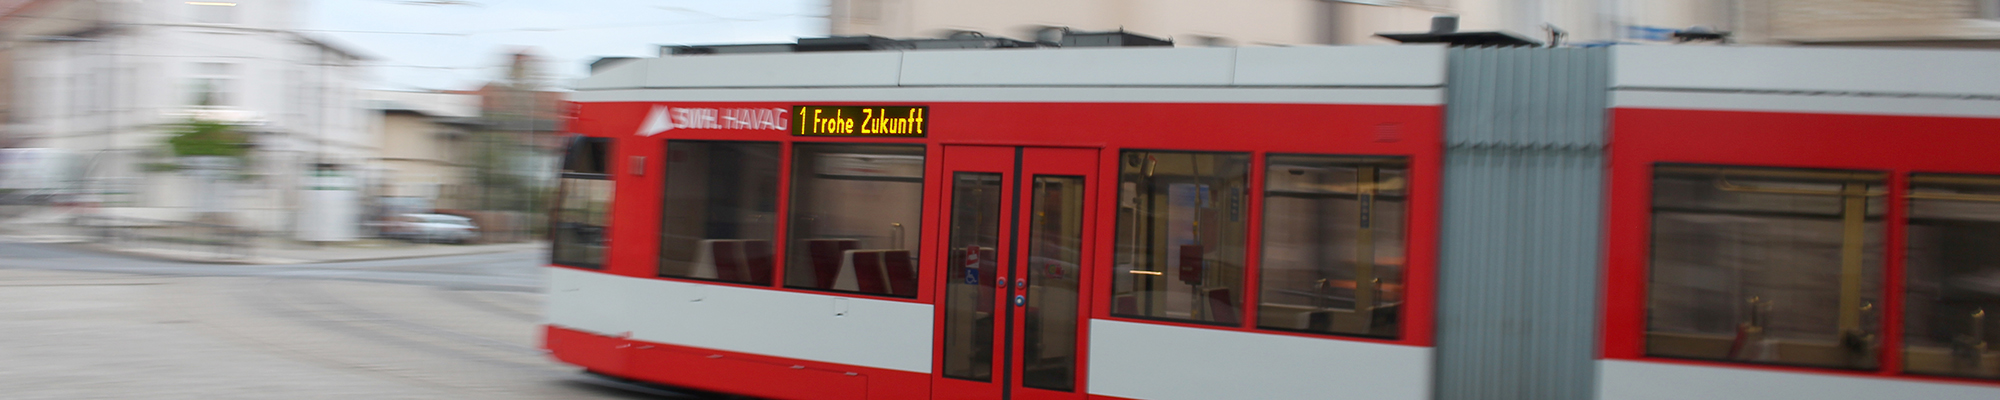 Straßenbahn Nummer 1 Richtung Frohe Zukunft in voller Fahrt.